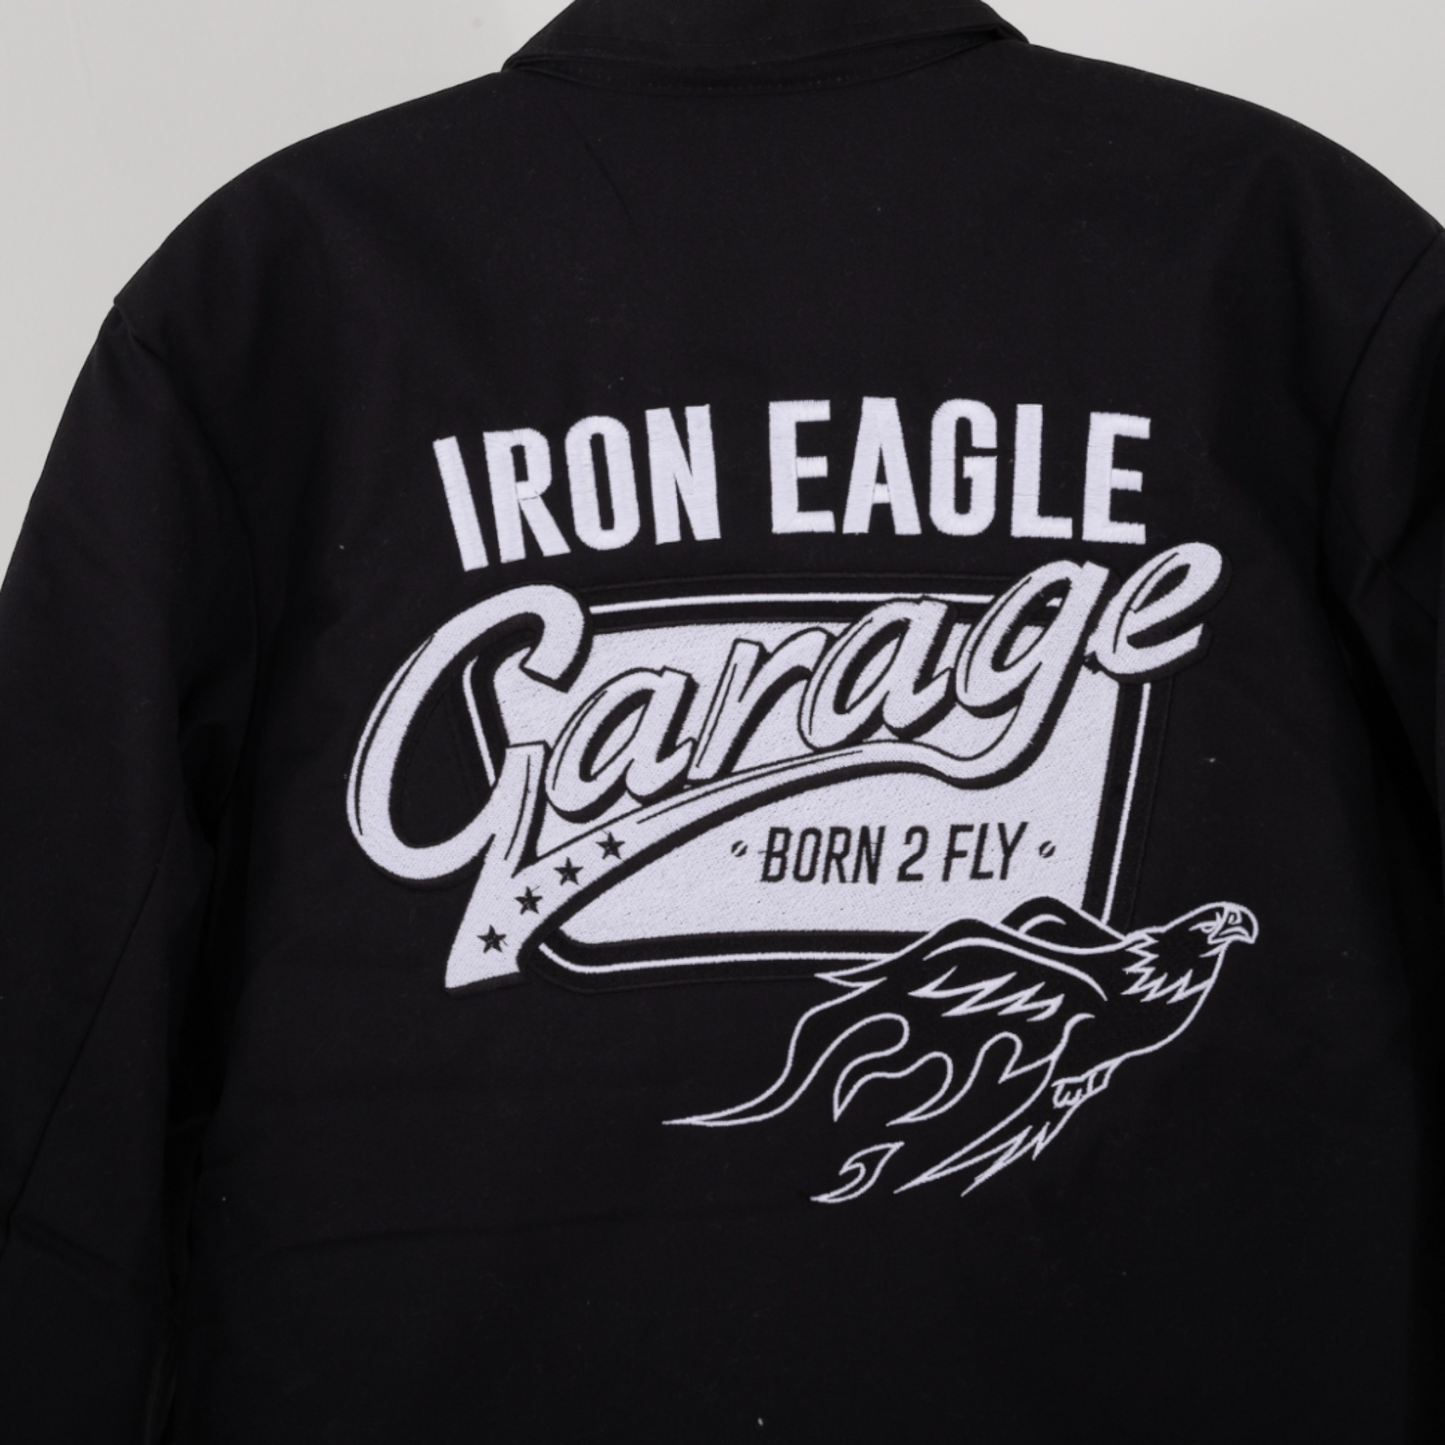 Iron Eagle Garage Mechanic Jacket . Black / White